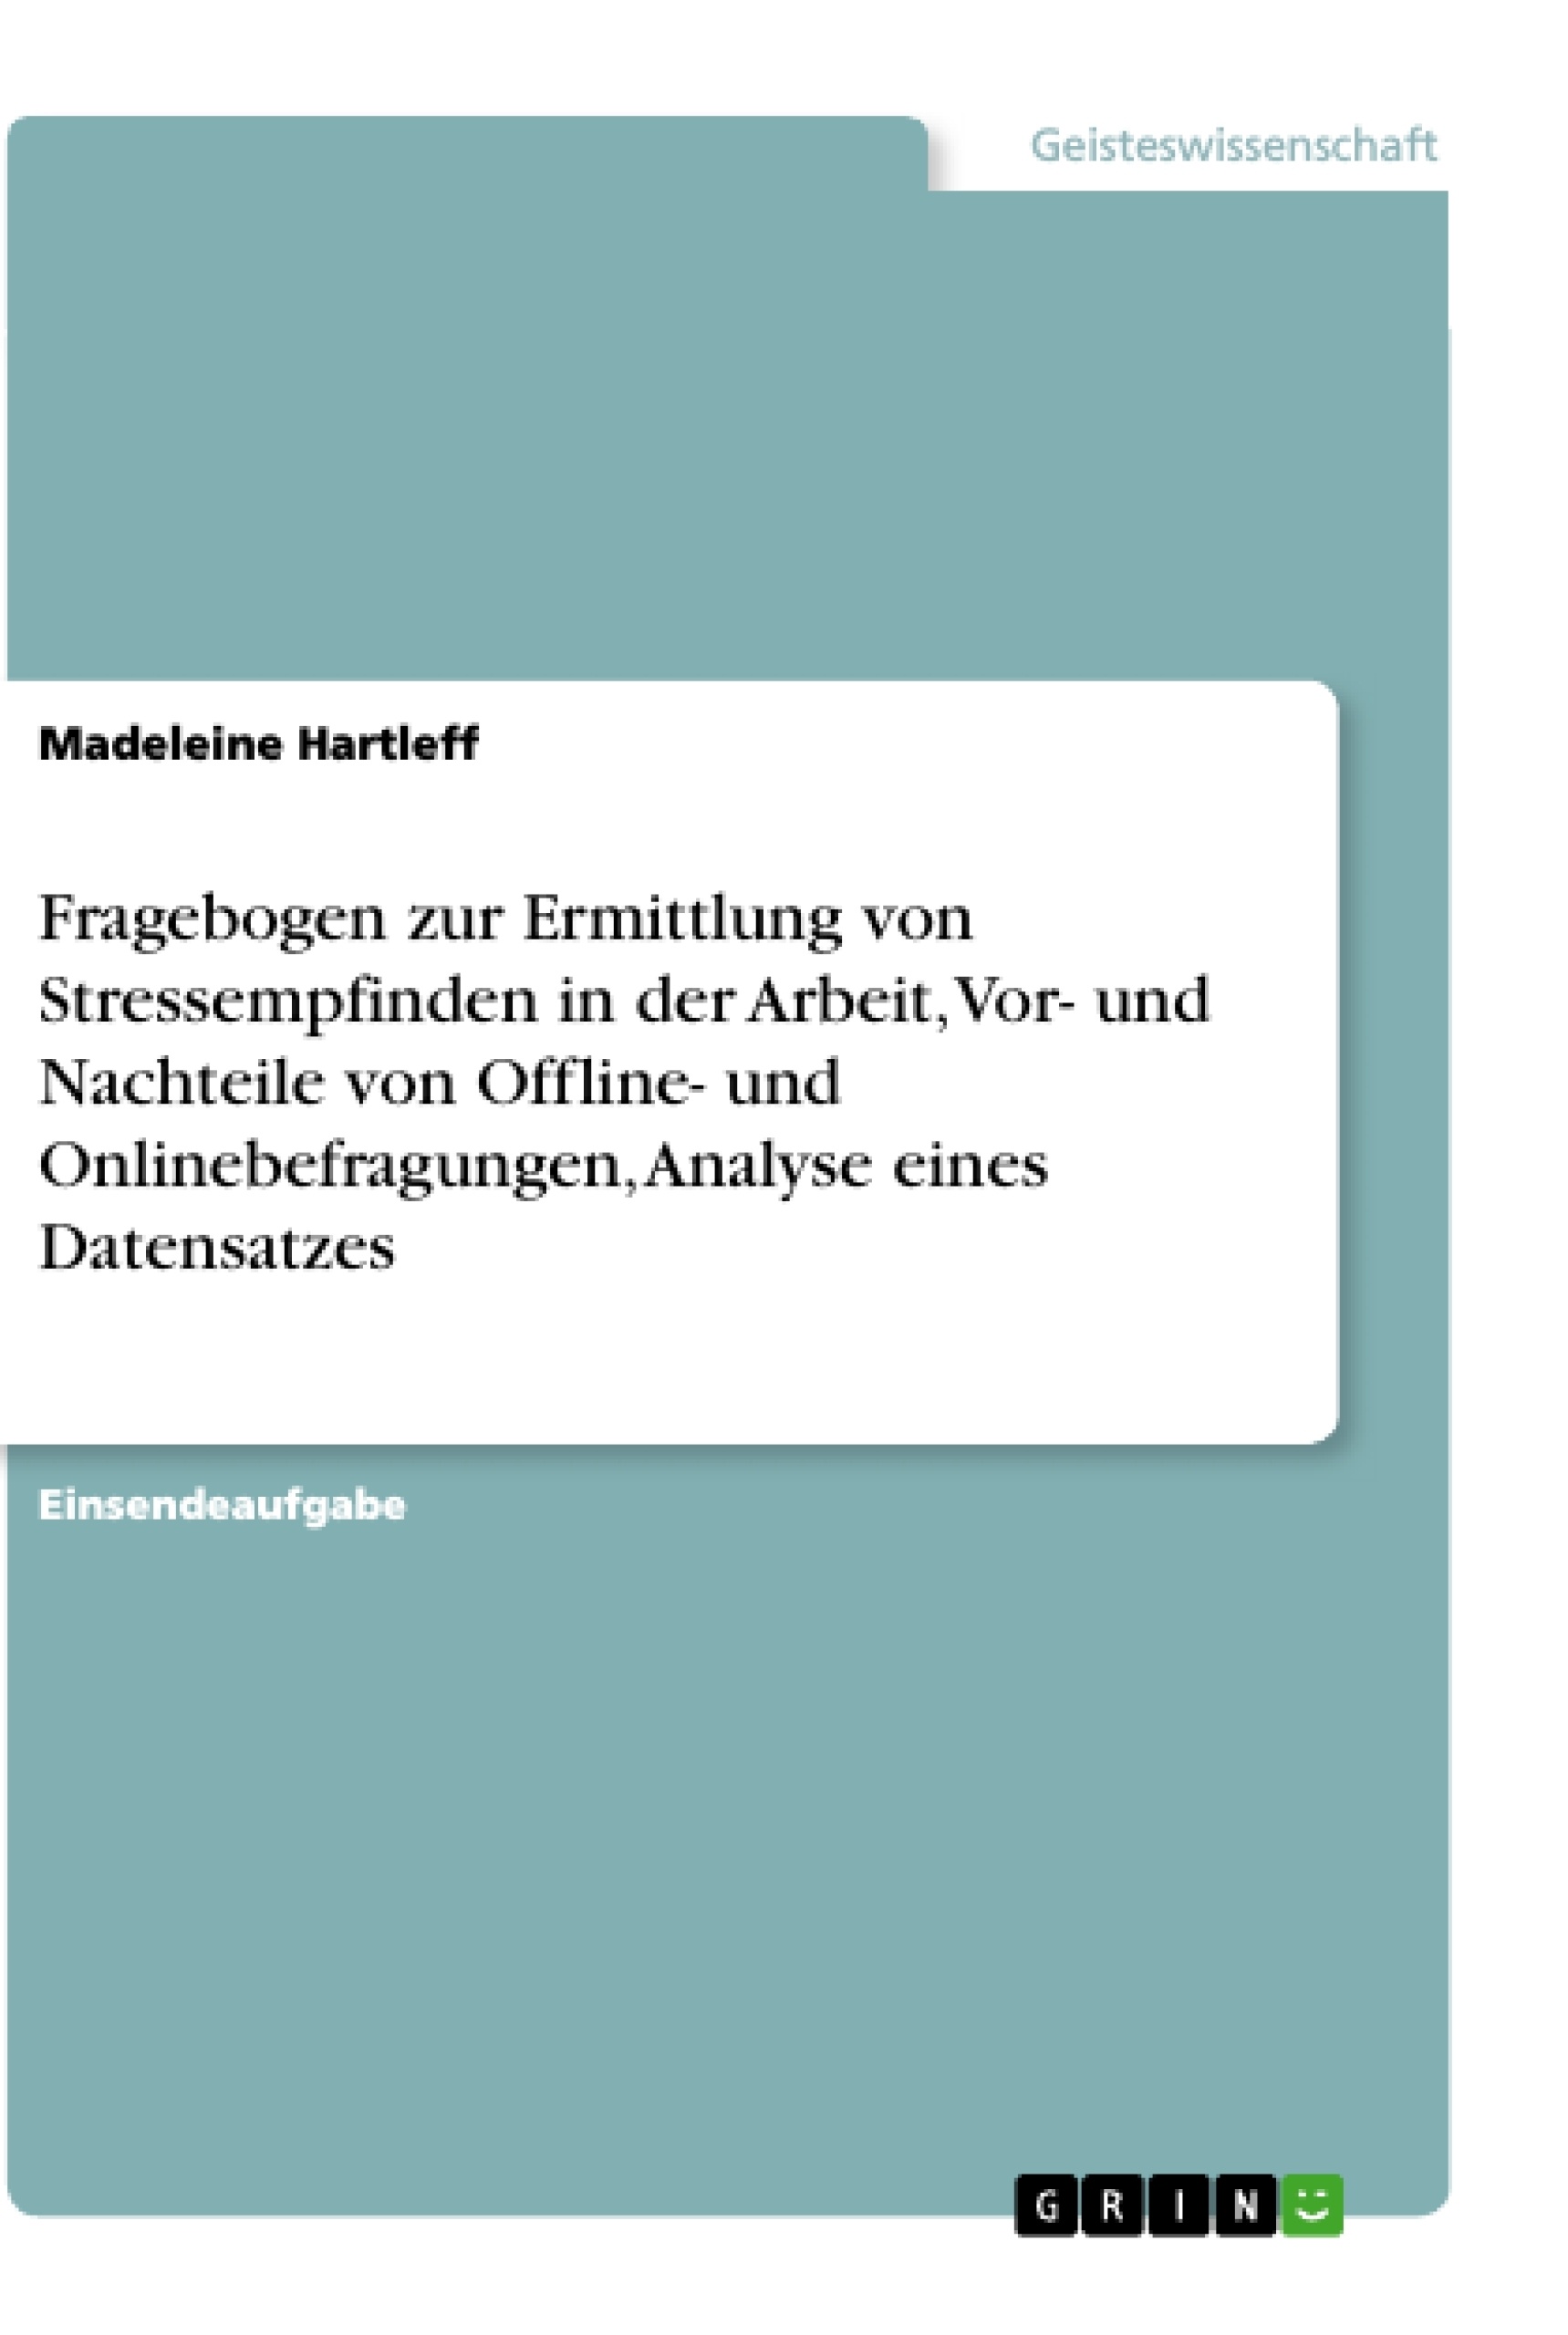 Titel: Fragebogen zur Ermittlung von Stressempfinden in der Arbeit, Vor- und Nachteile von Offline- und Onlinebefragungen, Analyse eines Datensatzes